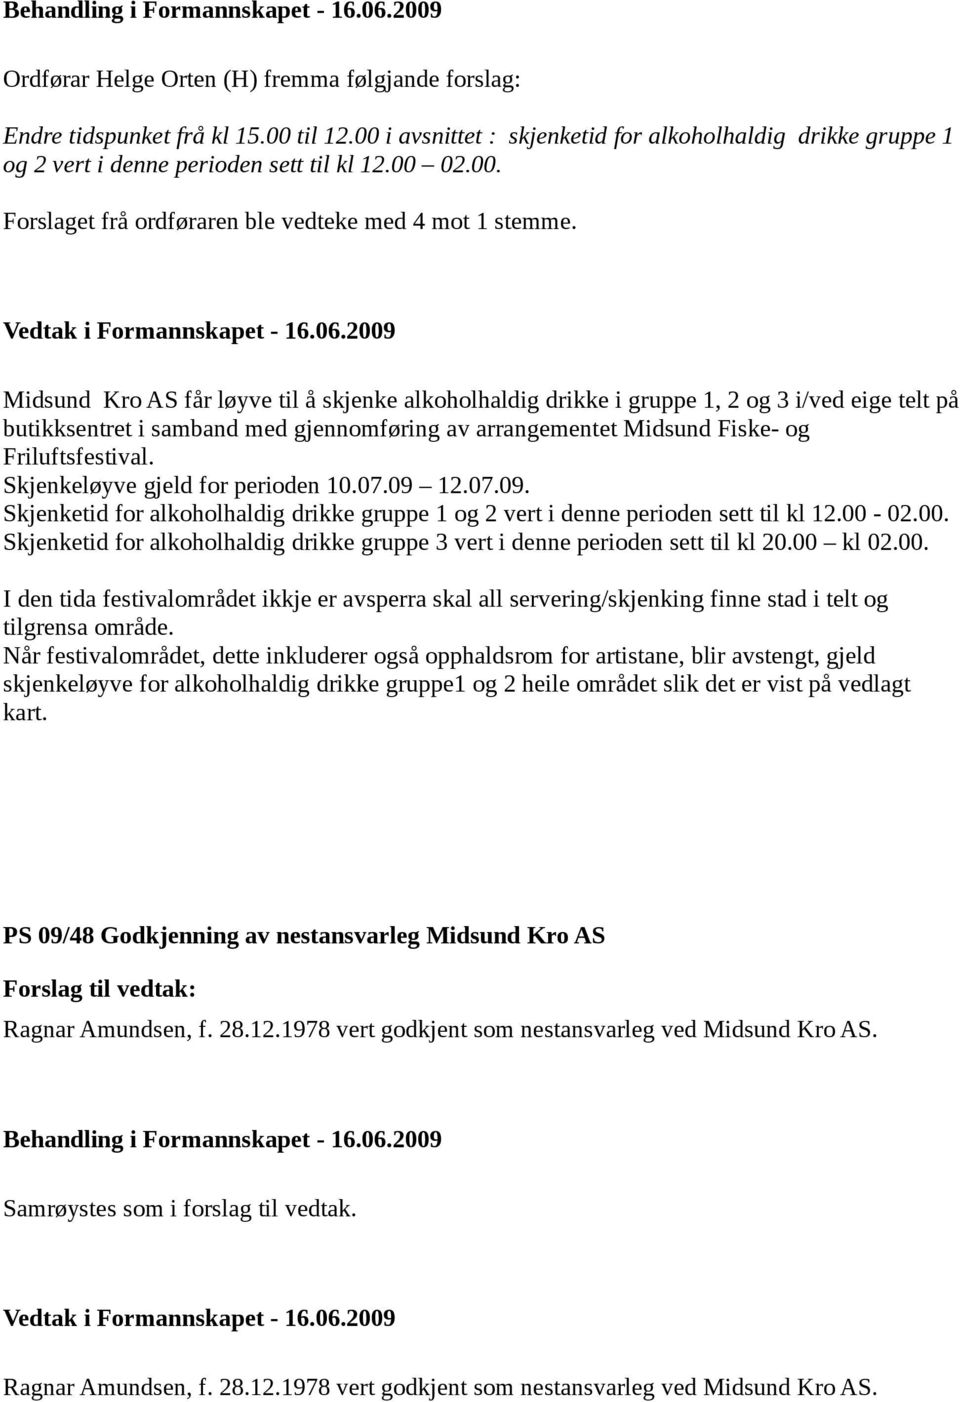 Midsund Kro AS får løyve til å skjenke alkoholhaldig drikke i gruppe 1, 2 og 3 i/ved eige telt på butikksentret i samband med gjennomføring av arrangementet Midsund Fiske- og Friluftsfestival.